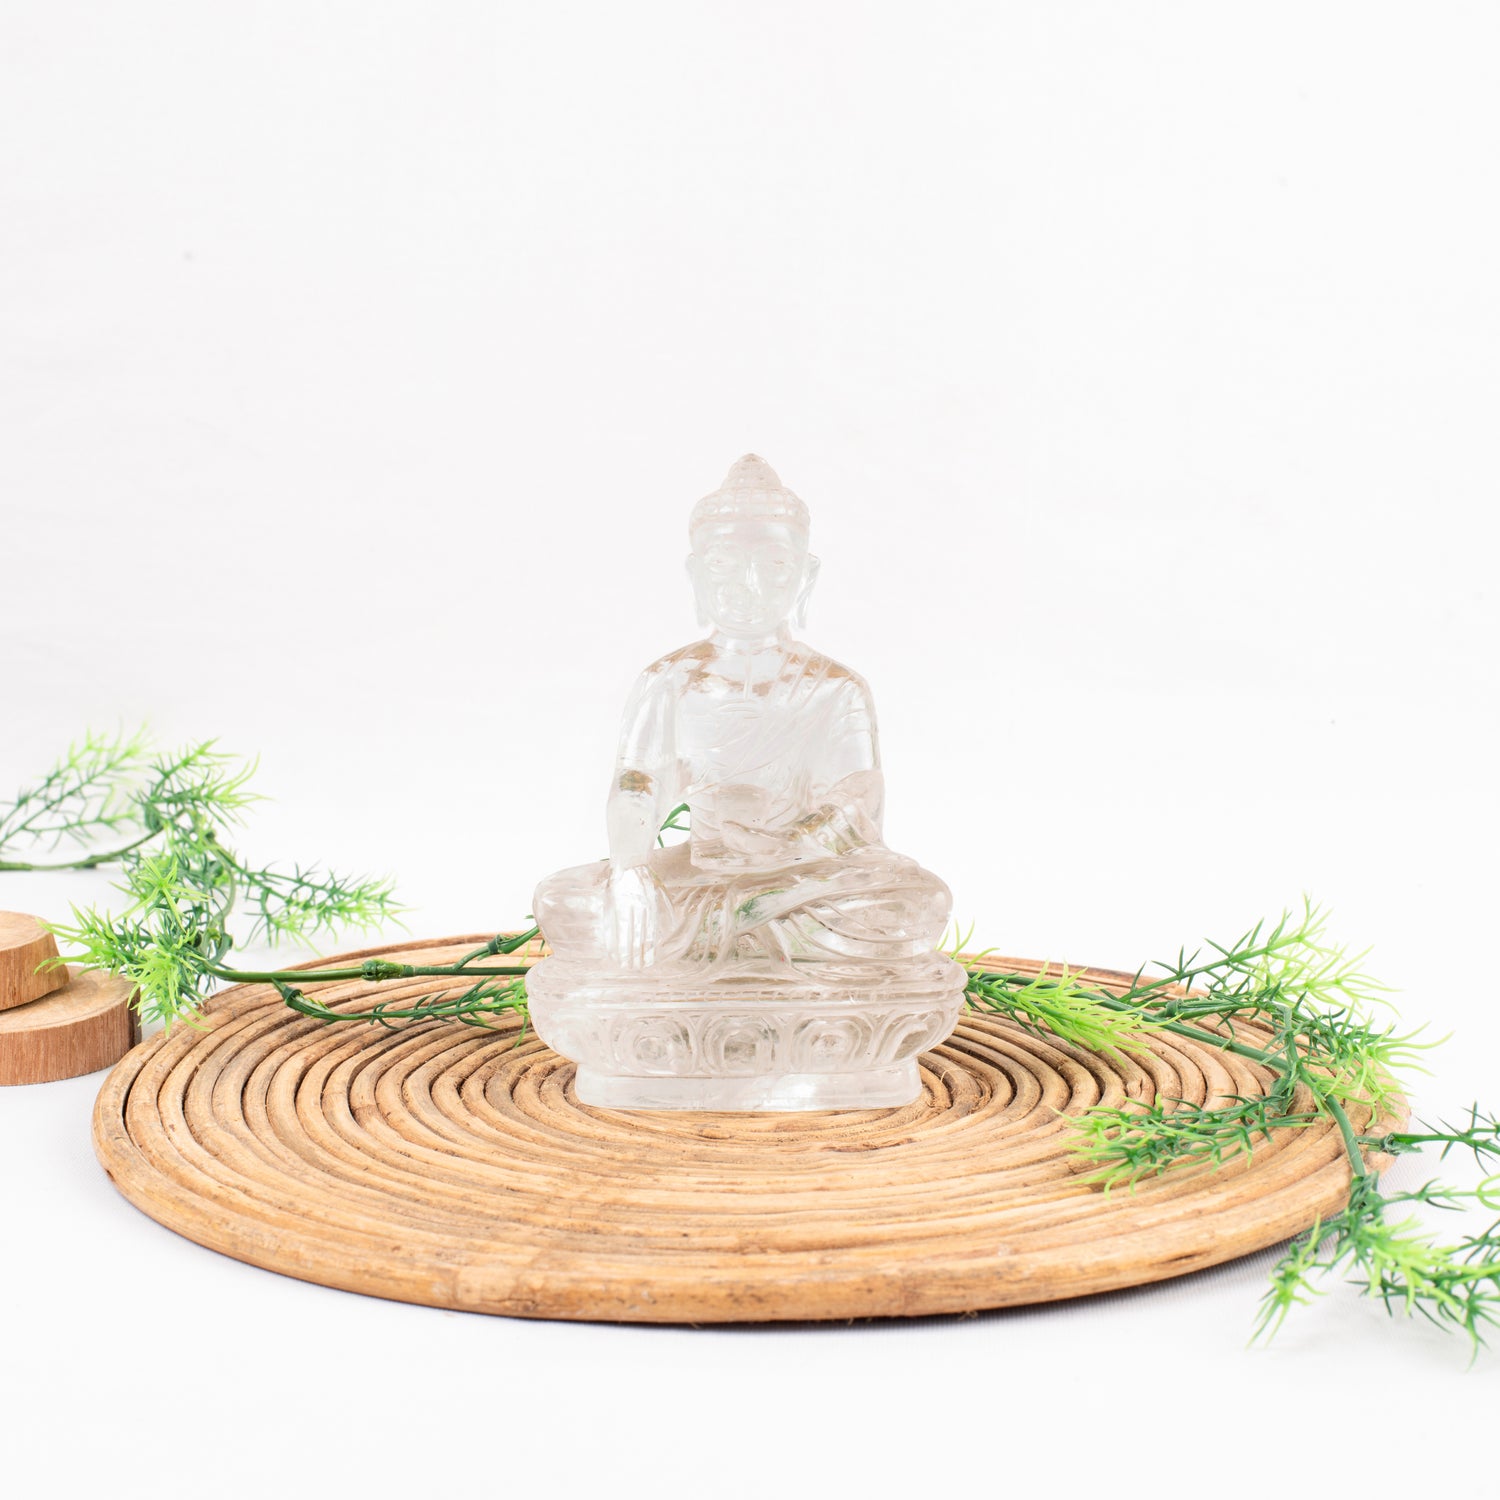 Crystal Clear Quartz Buddha Idol